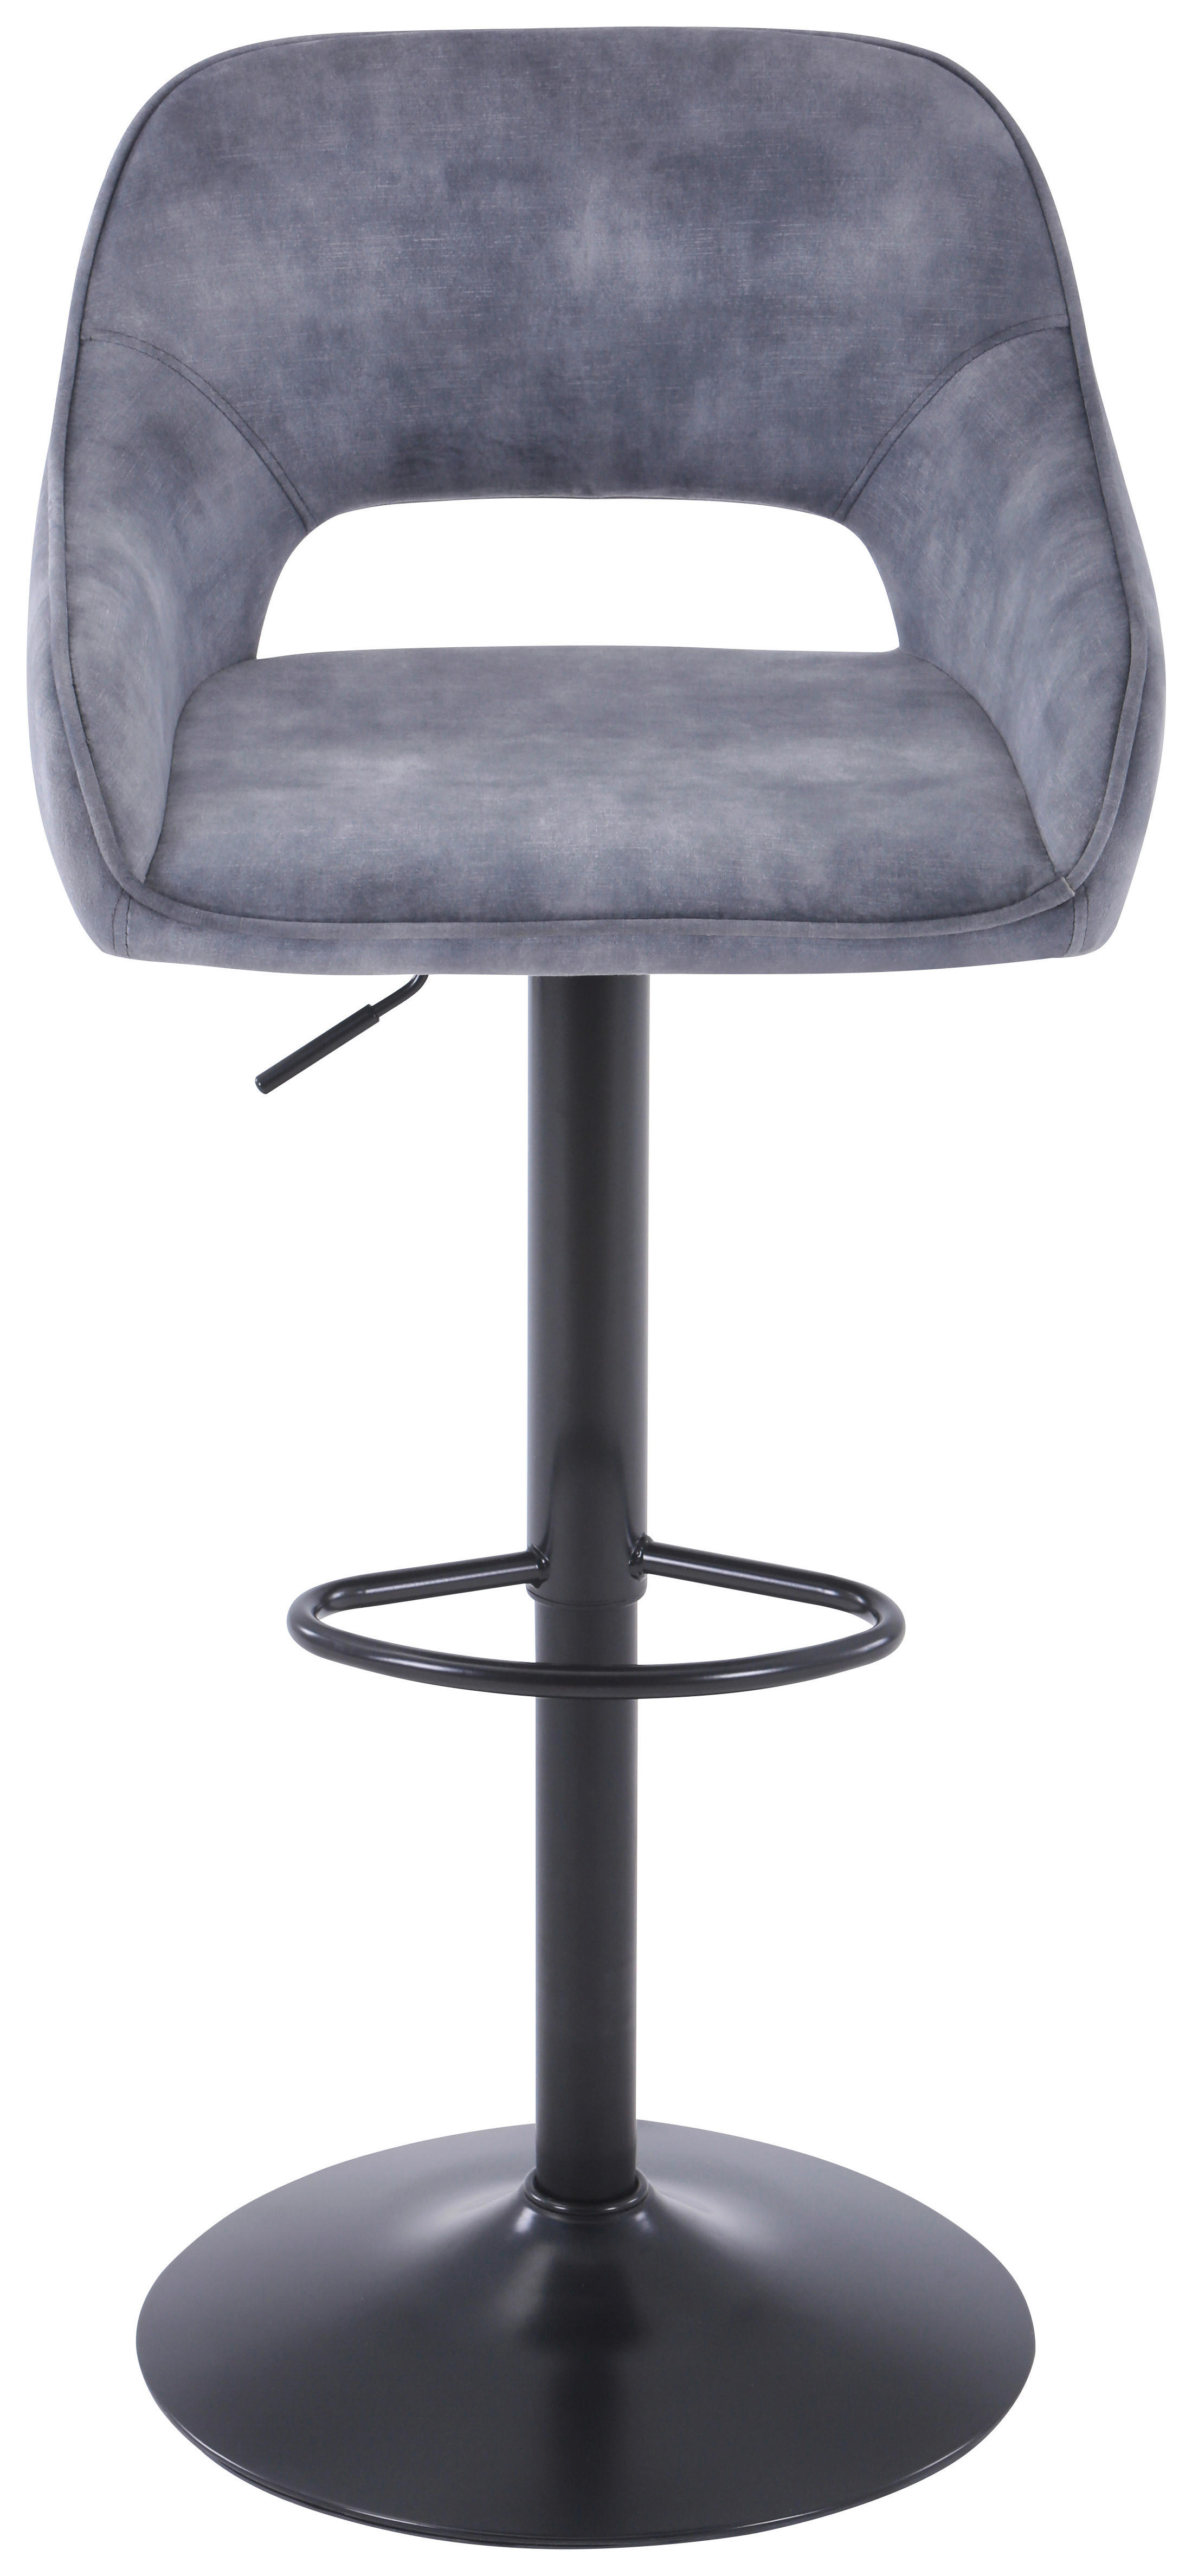 BARPALL i grå, svart  - grå/svart, Design, metall/textil (50/99/54cm) - Carryhome